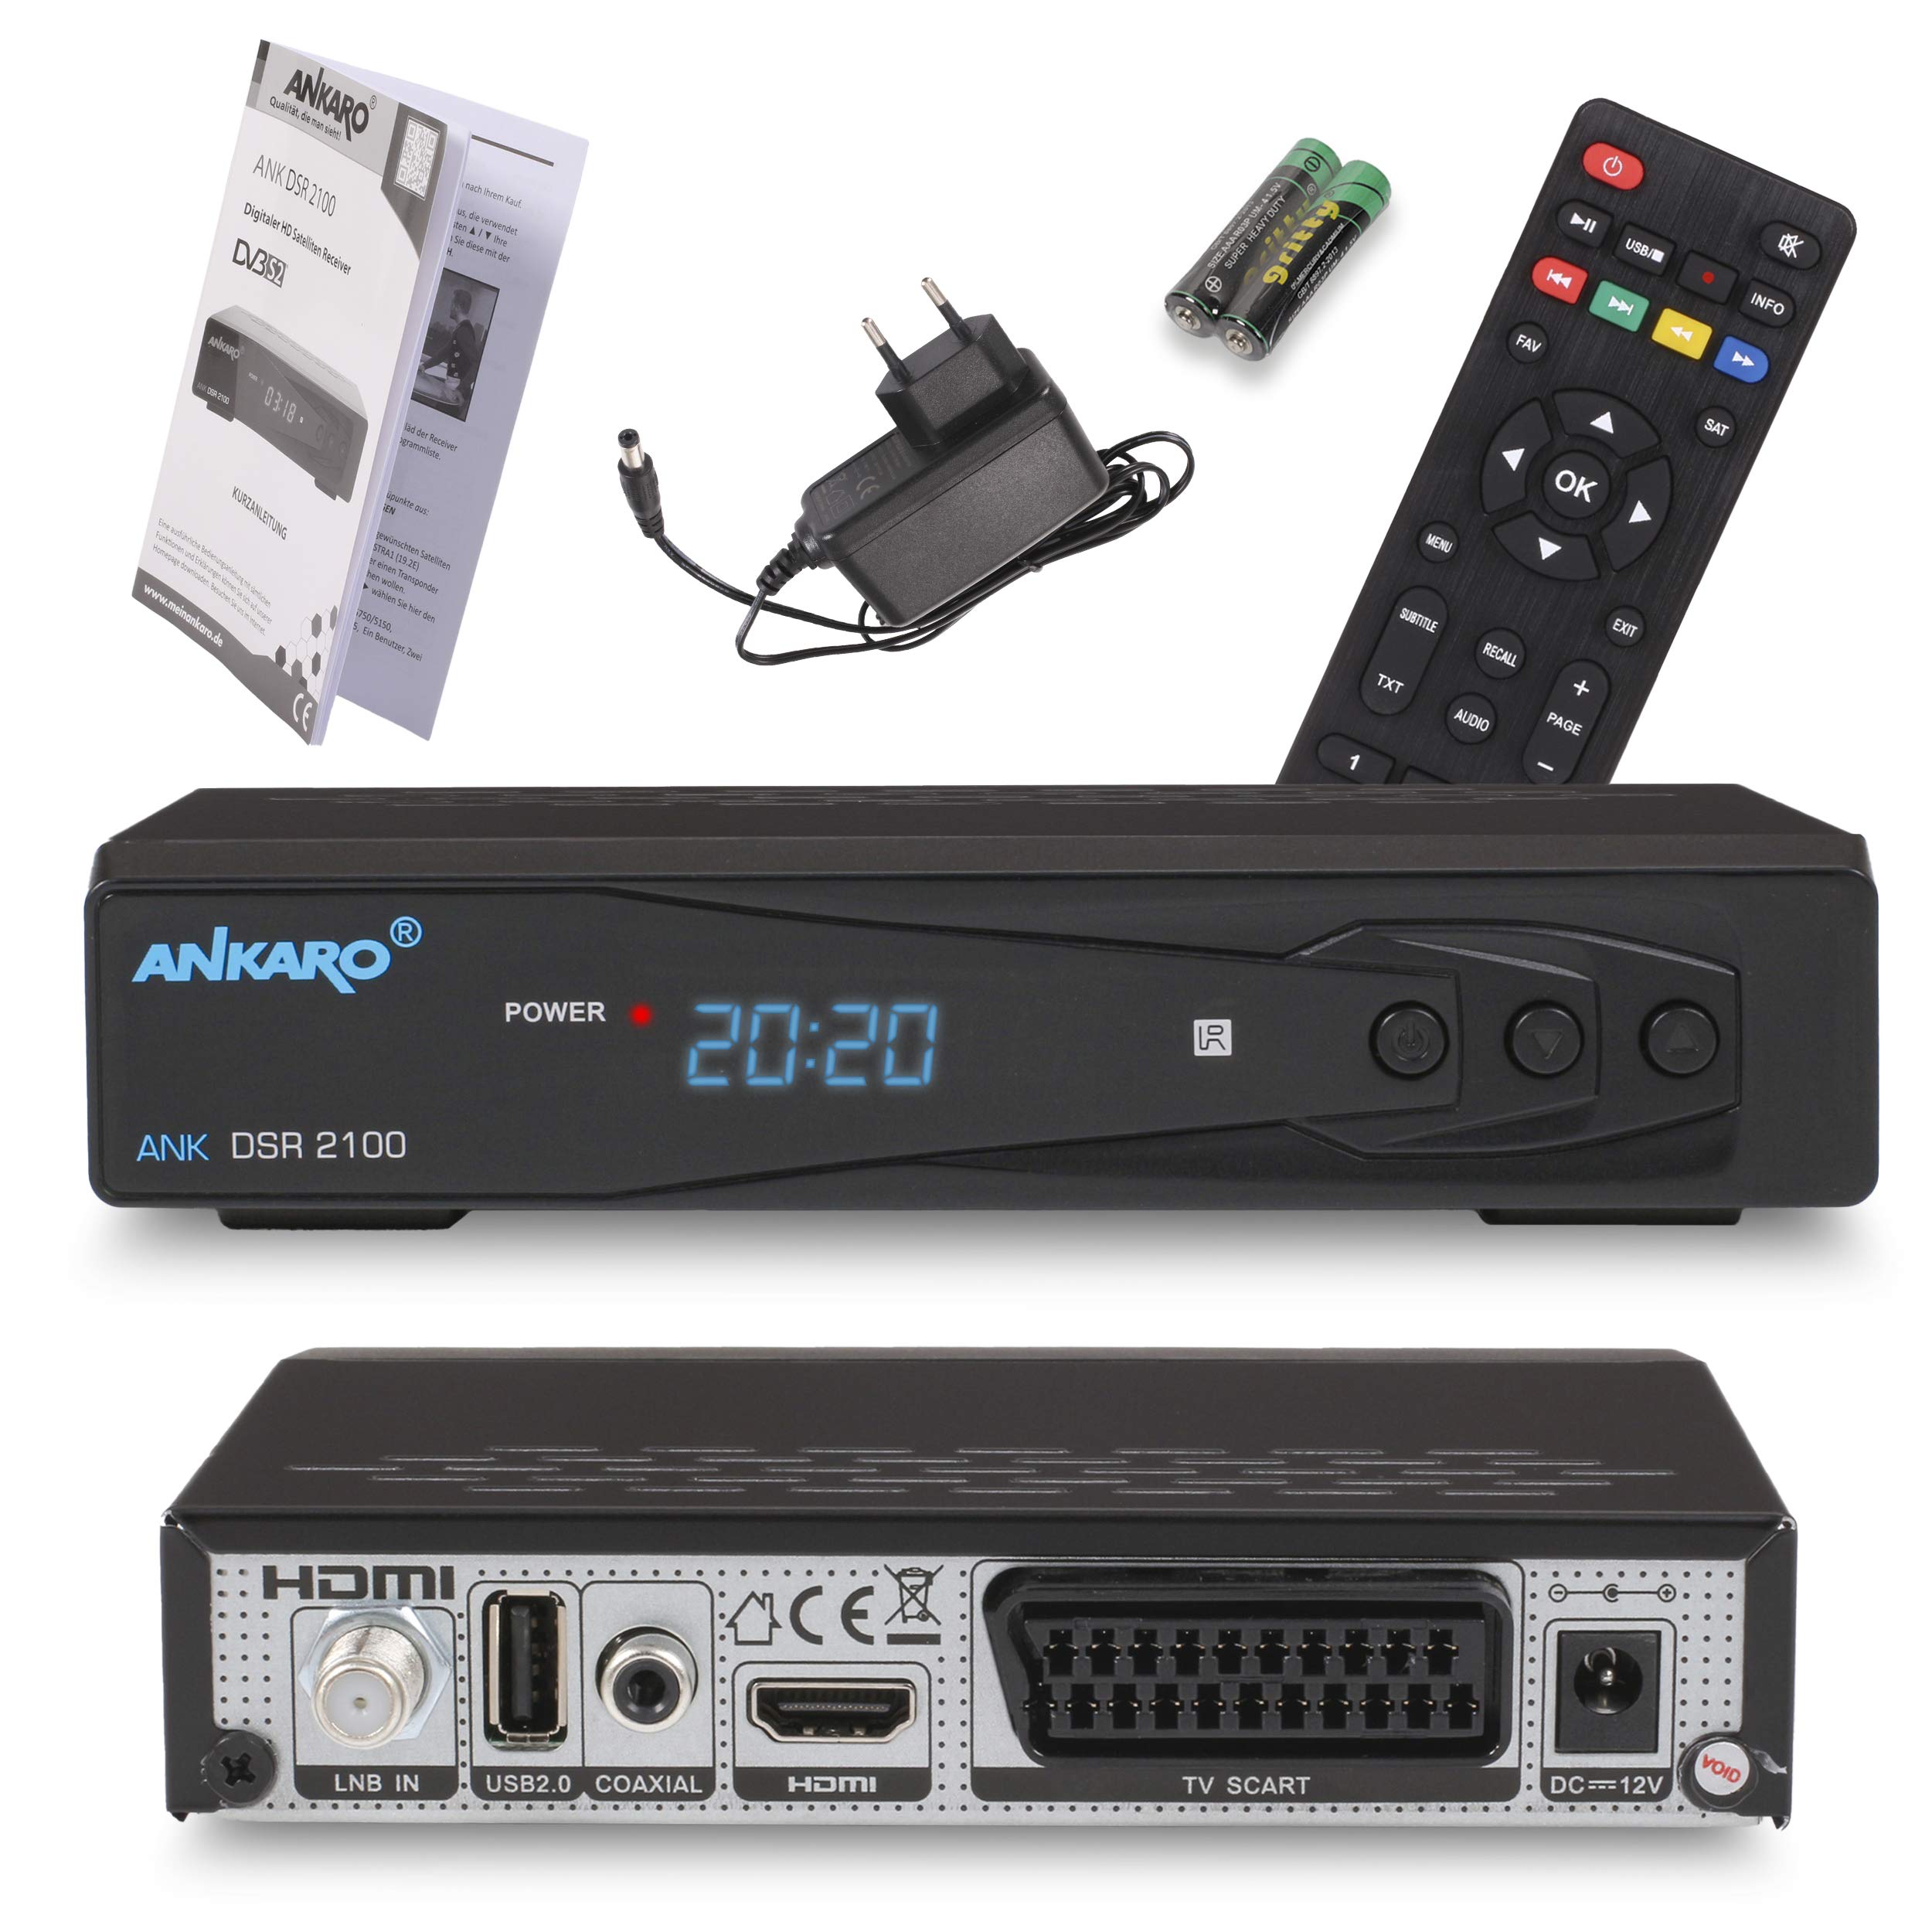 ANKARO DSR 2100 digitaler Full HD 1080p Satelliten Receiver schwarz mit USB Mediaplayer/HDMI/Scart/LED Display / 12V Netzteil ideal für Camping